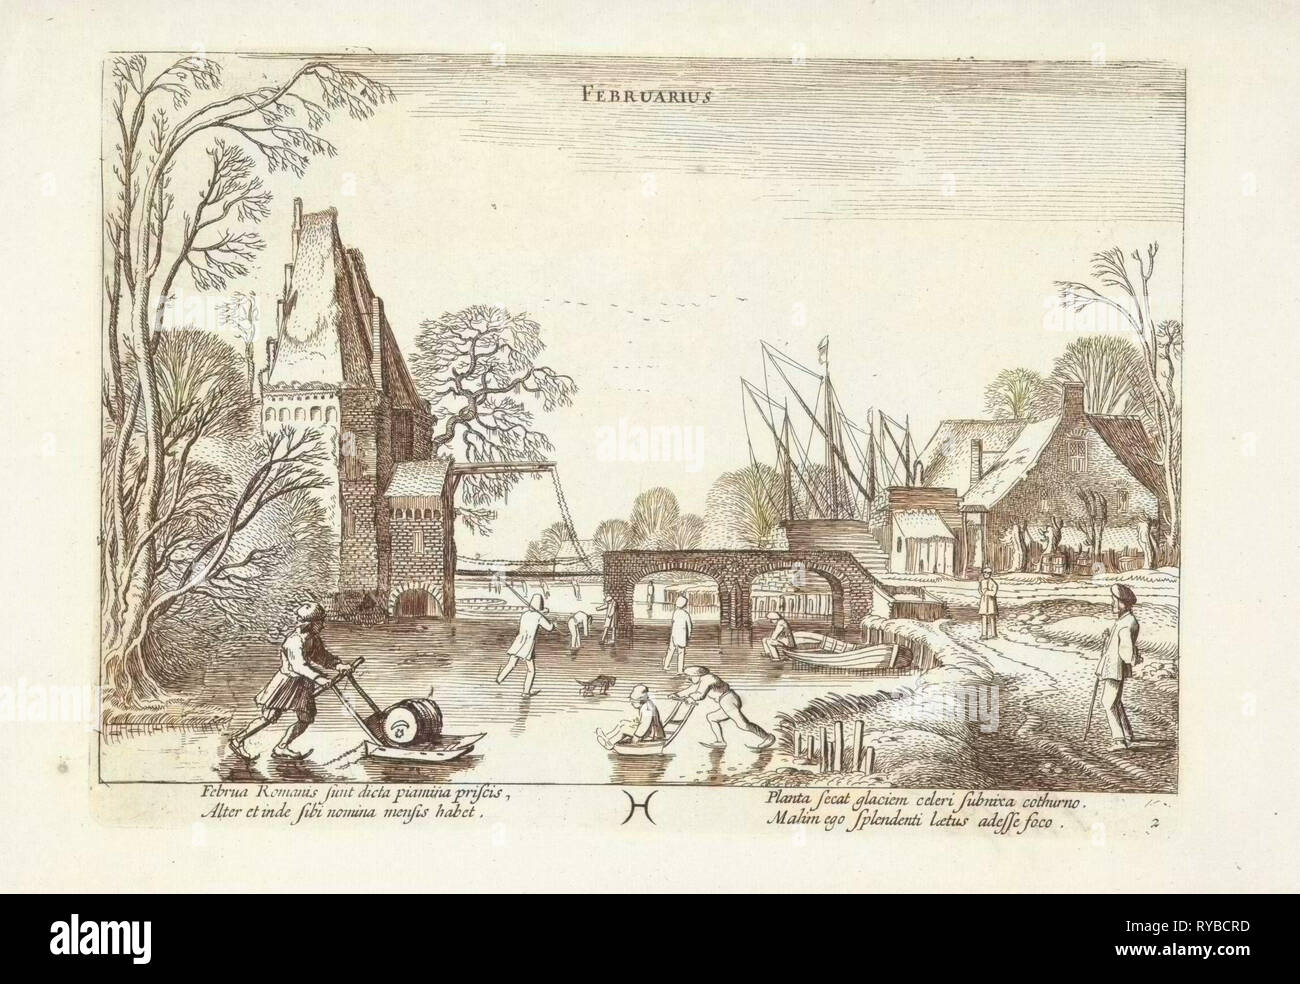 Paesaggio invernale con pattinatori e figure con slittini sul ghiaccio, raffigurante il mese di febbraio, il simbolo astrologico della costellazione pesci, stampa maker: Jan van de Velde (II), risalente 1608 - 1618 e/o 1630 - 1699 Foto Stock